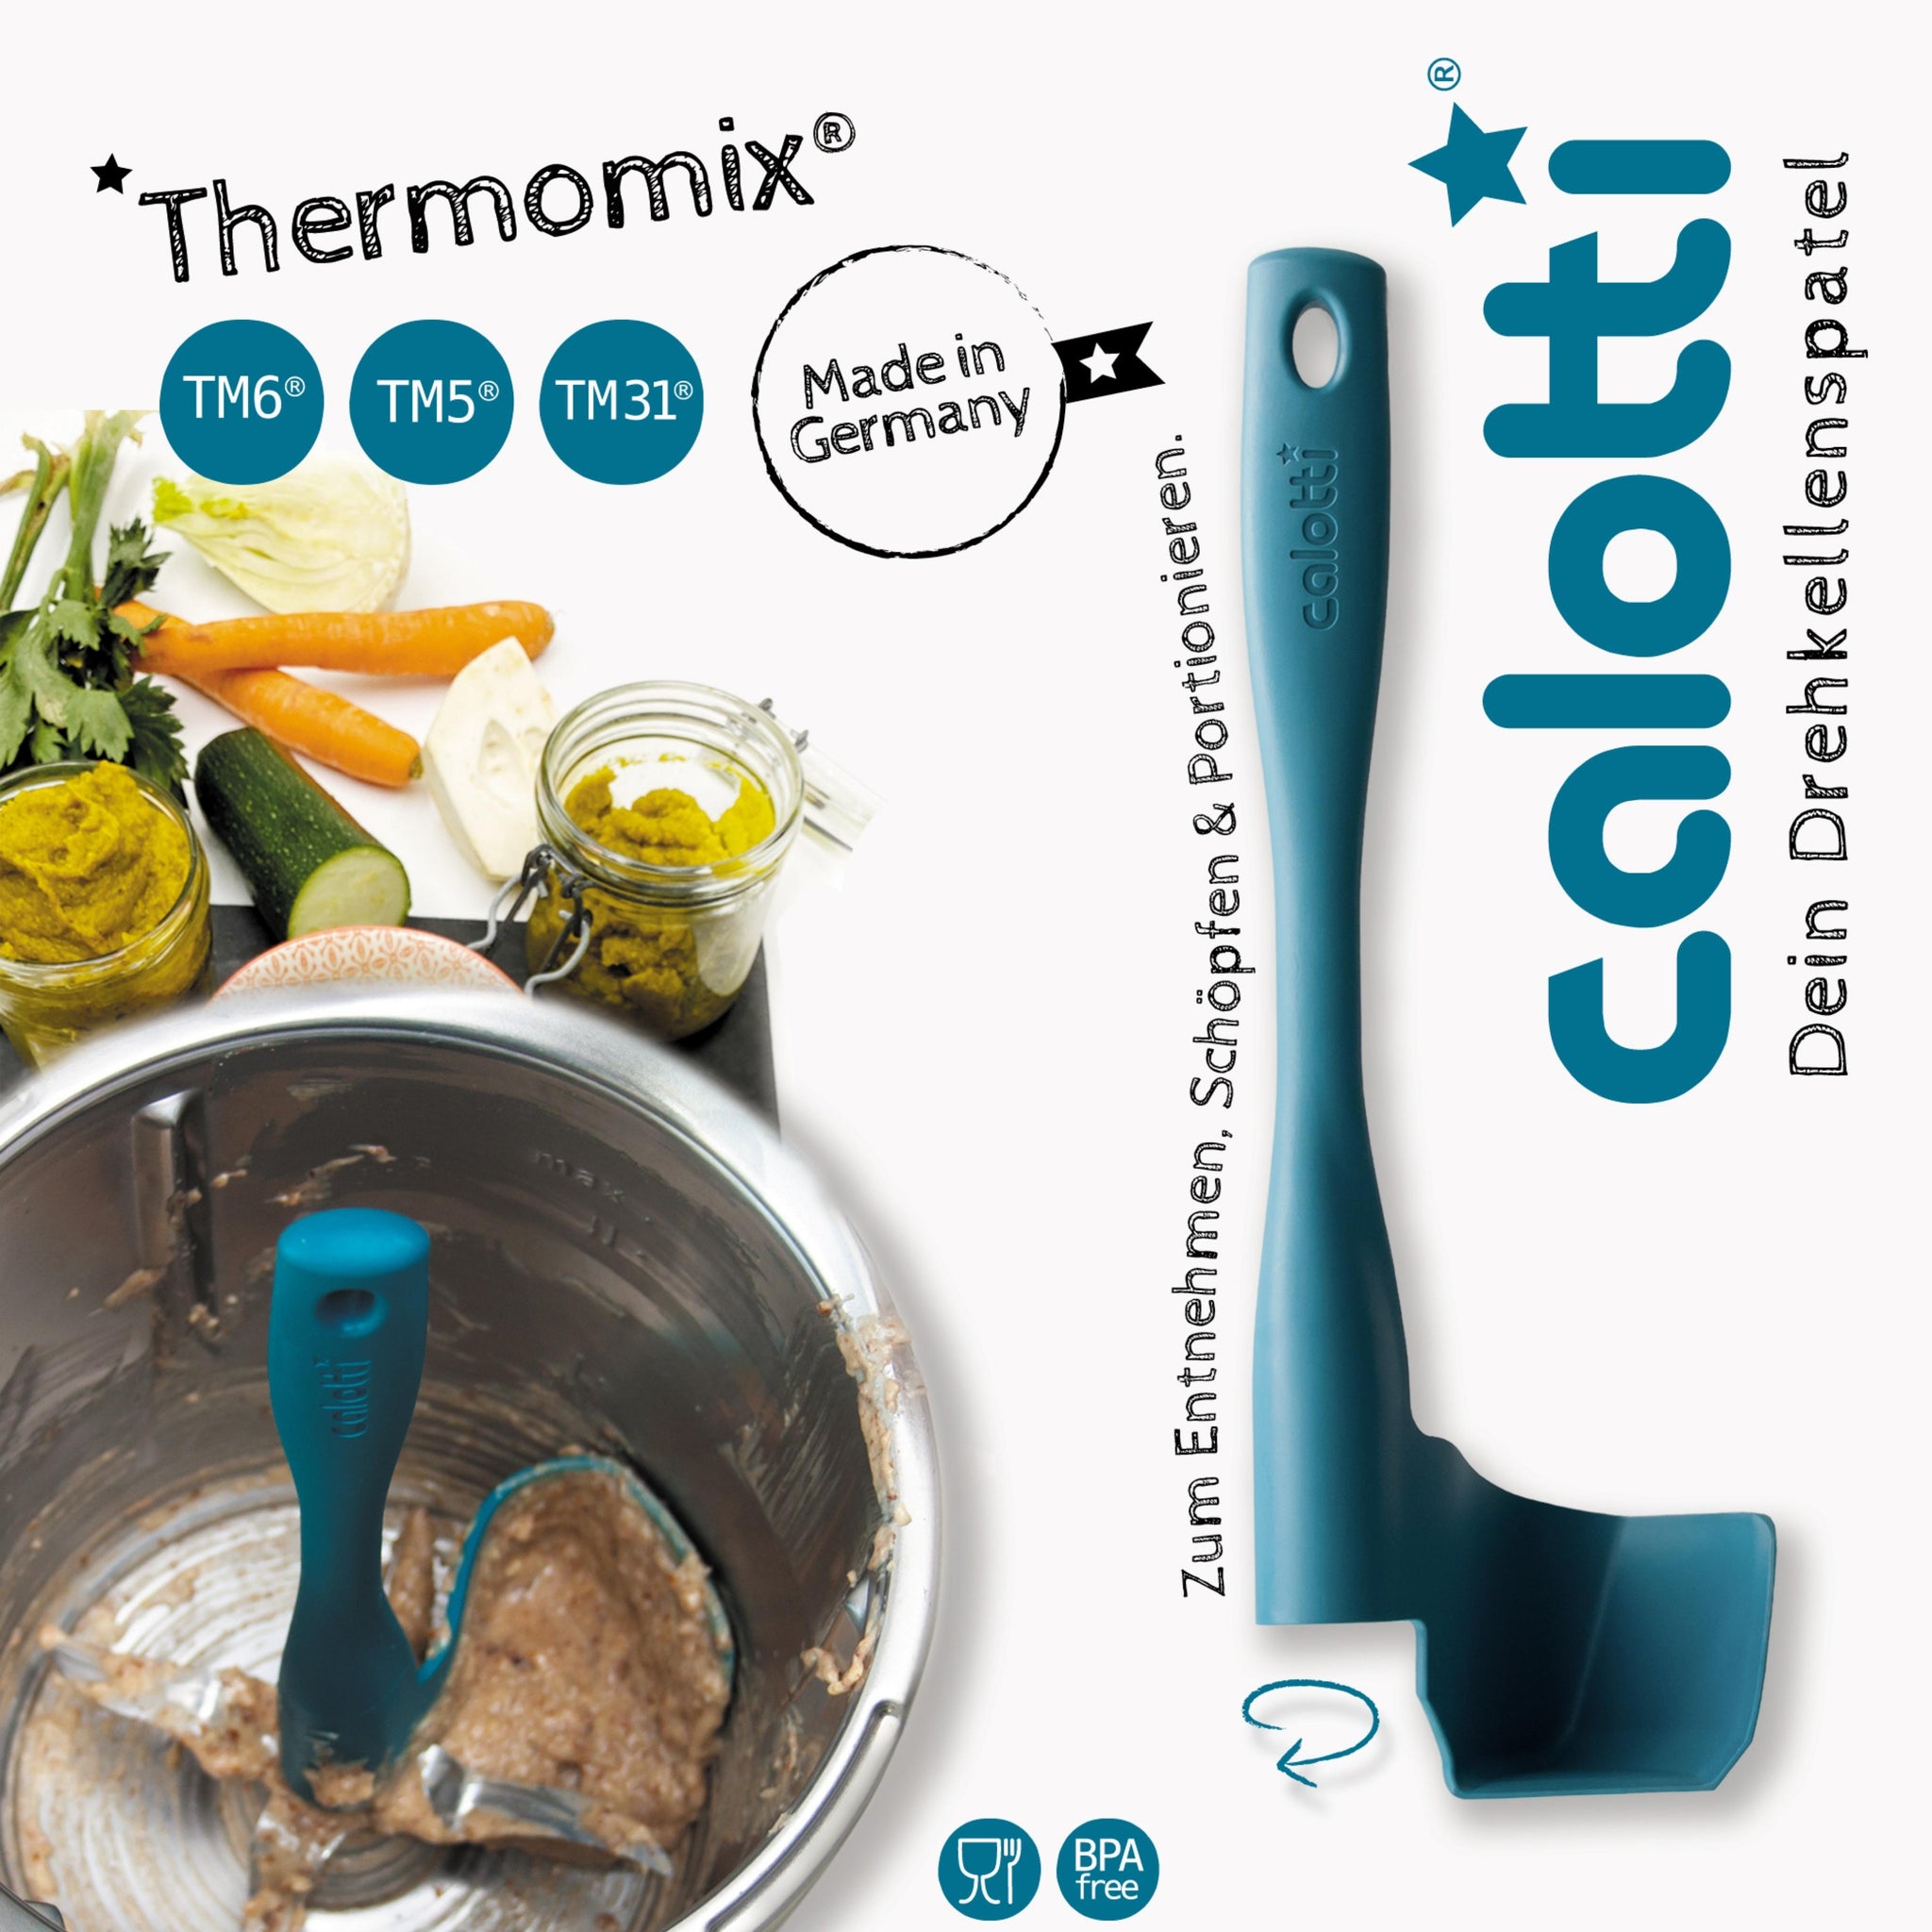 Destille für dem Thermomix: Ganz einfach mit dem Thermomix